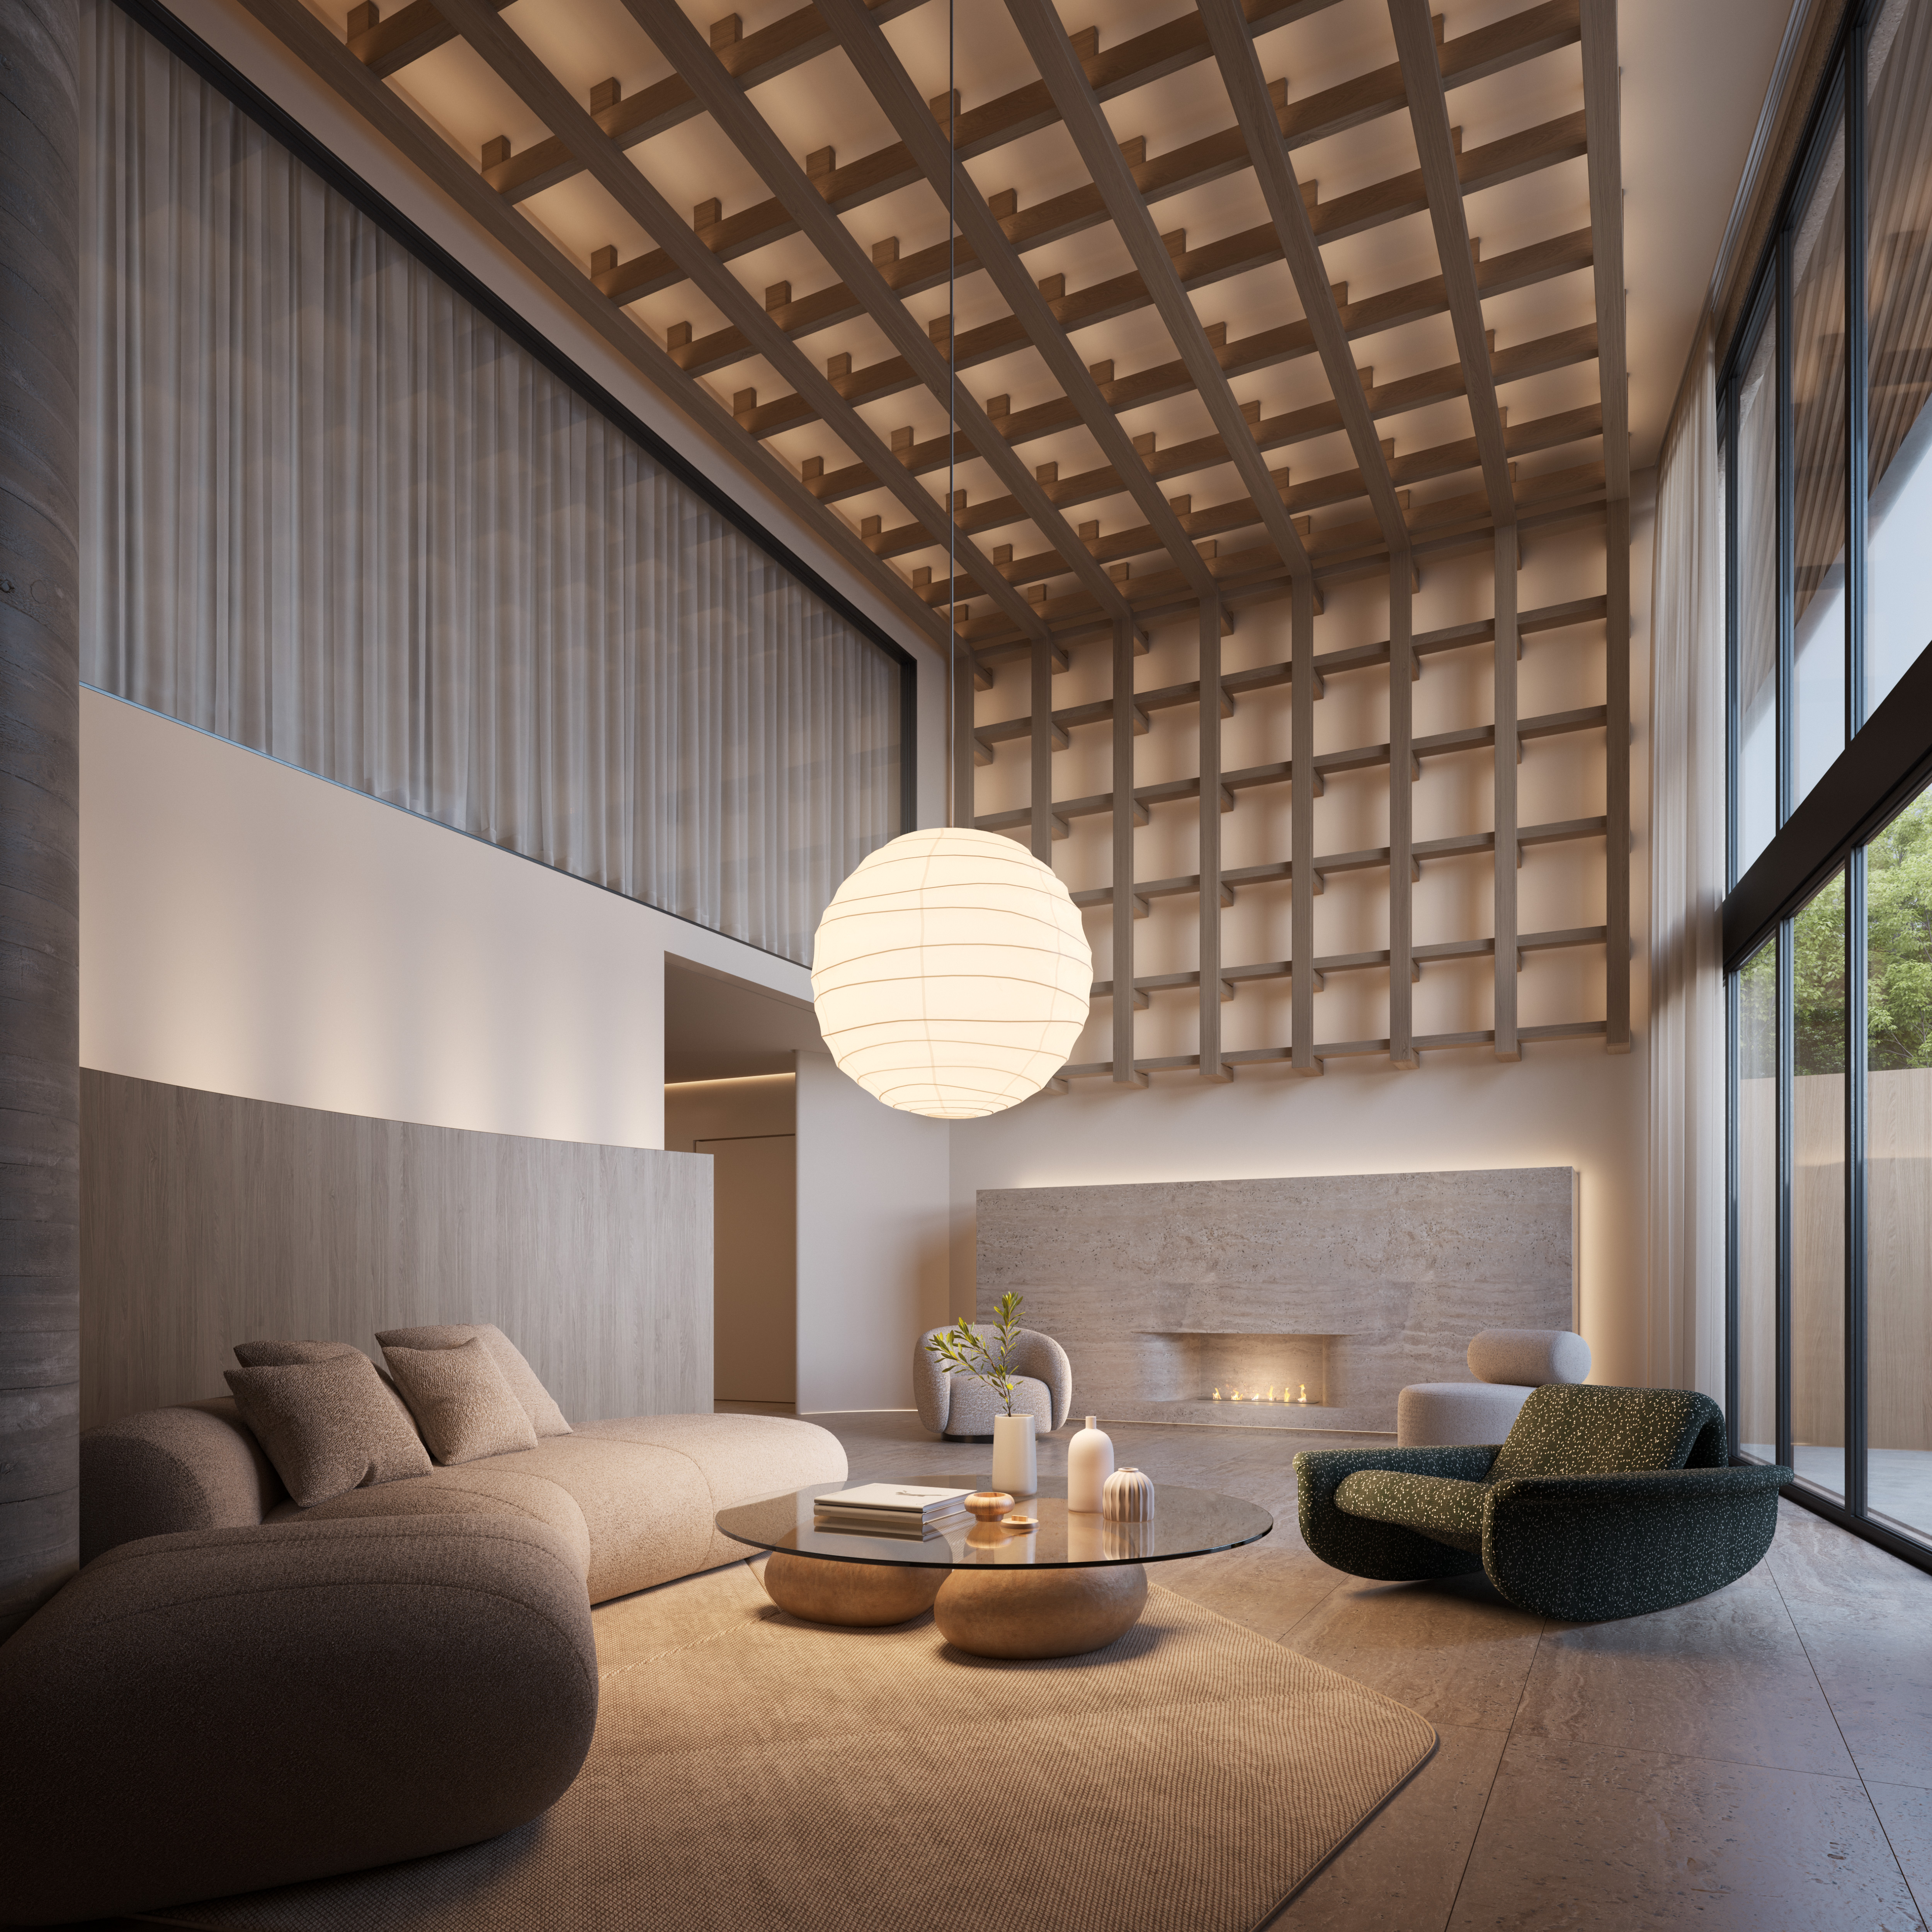 Condomínio residencial: a influência da arquitetura japonesa com toques de brasilidade transformam as áreas comuns do Edifício Zen em espaços aconchegantes